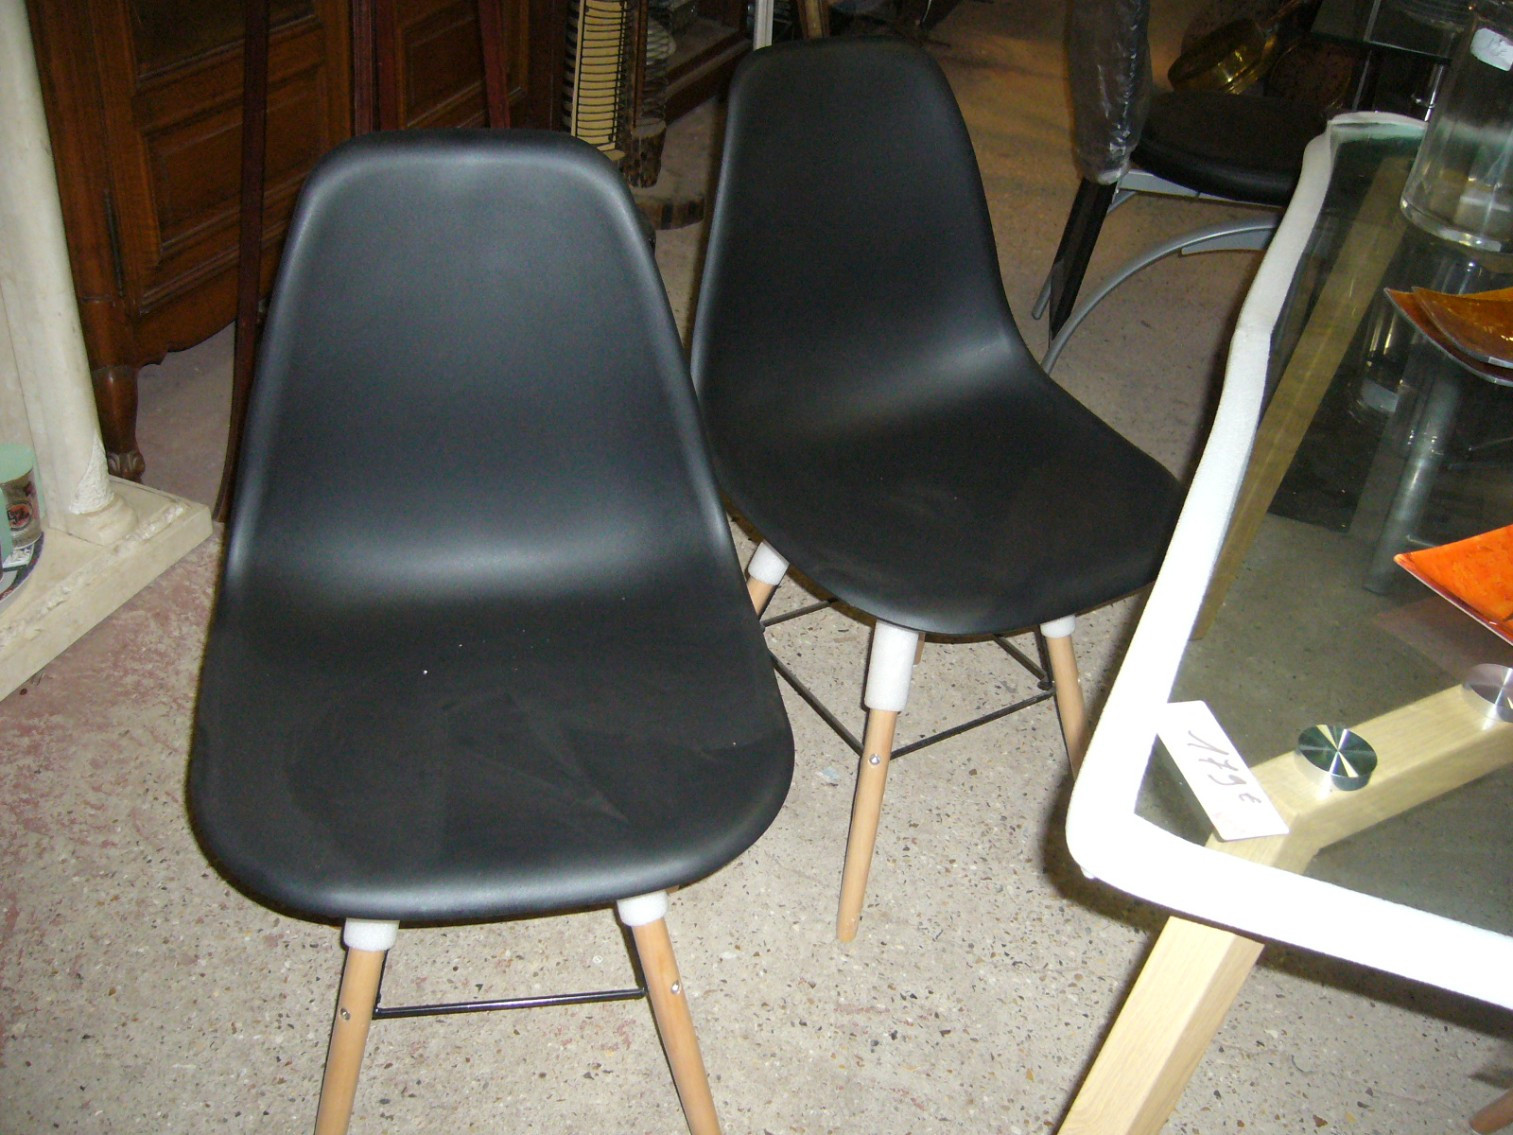 
                                                Meuble
                                                 4 chaises neuves, promotion